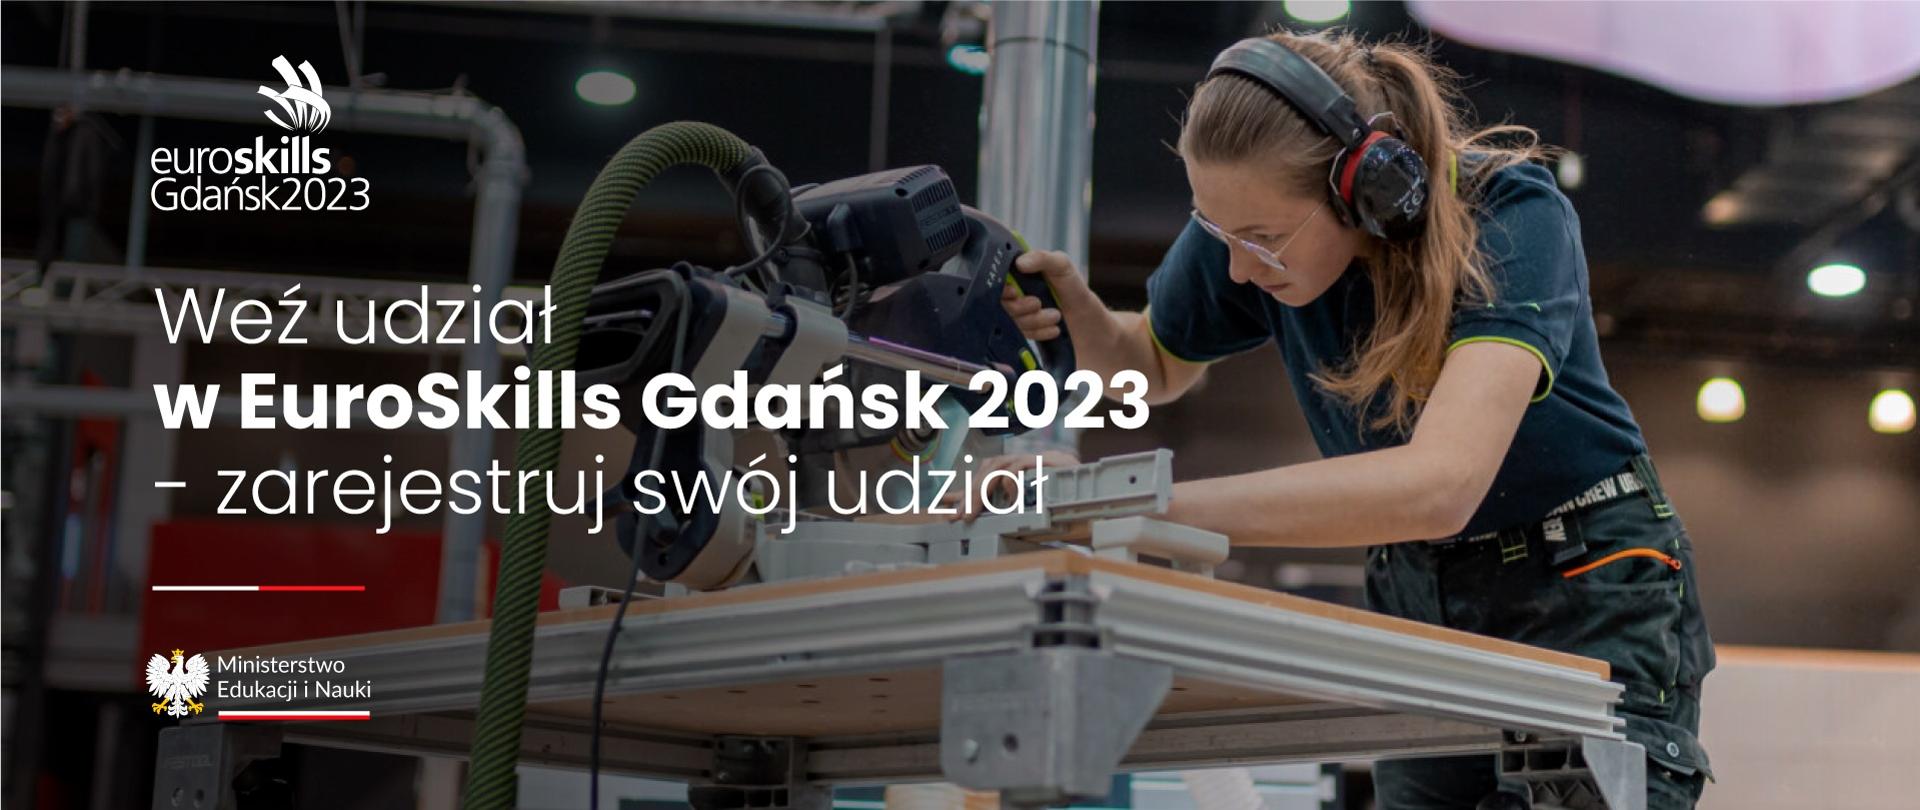 Grafika - młoda kobieta pracuje przy maszynie, obok napis Weź udział w EuroSkills Gdańsk 2023 – zarejestruj swój udział.